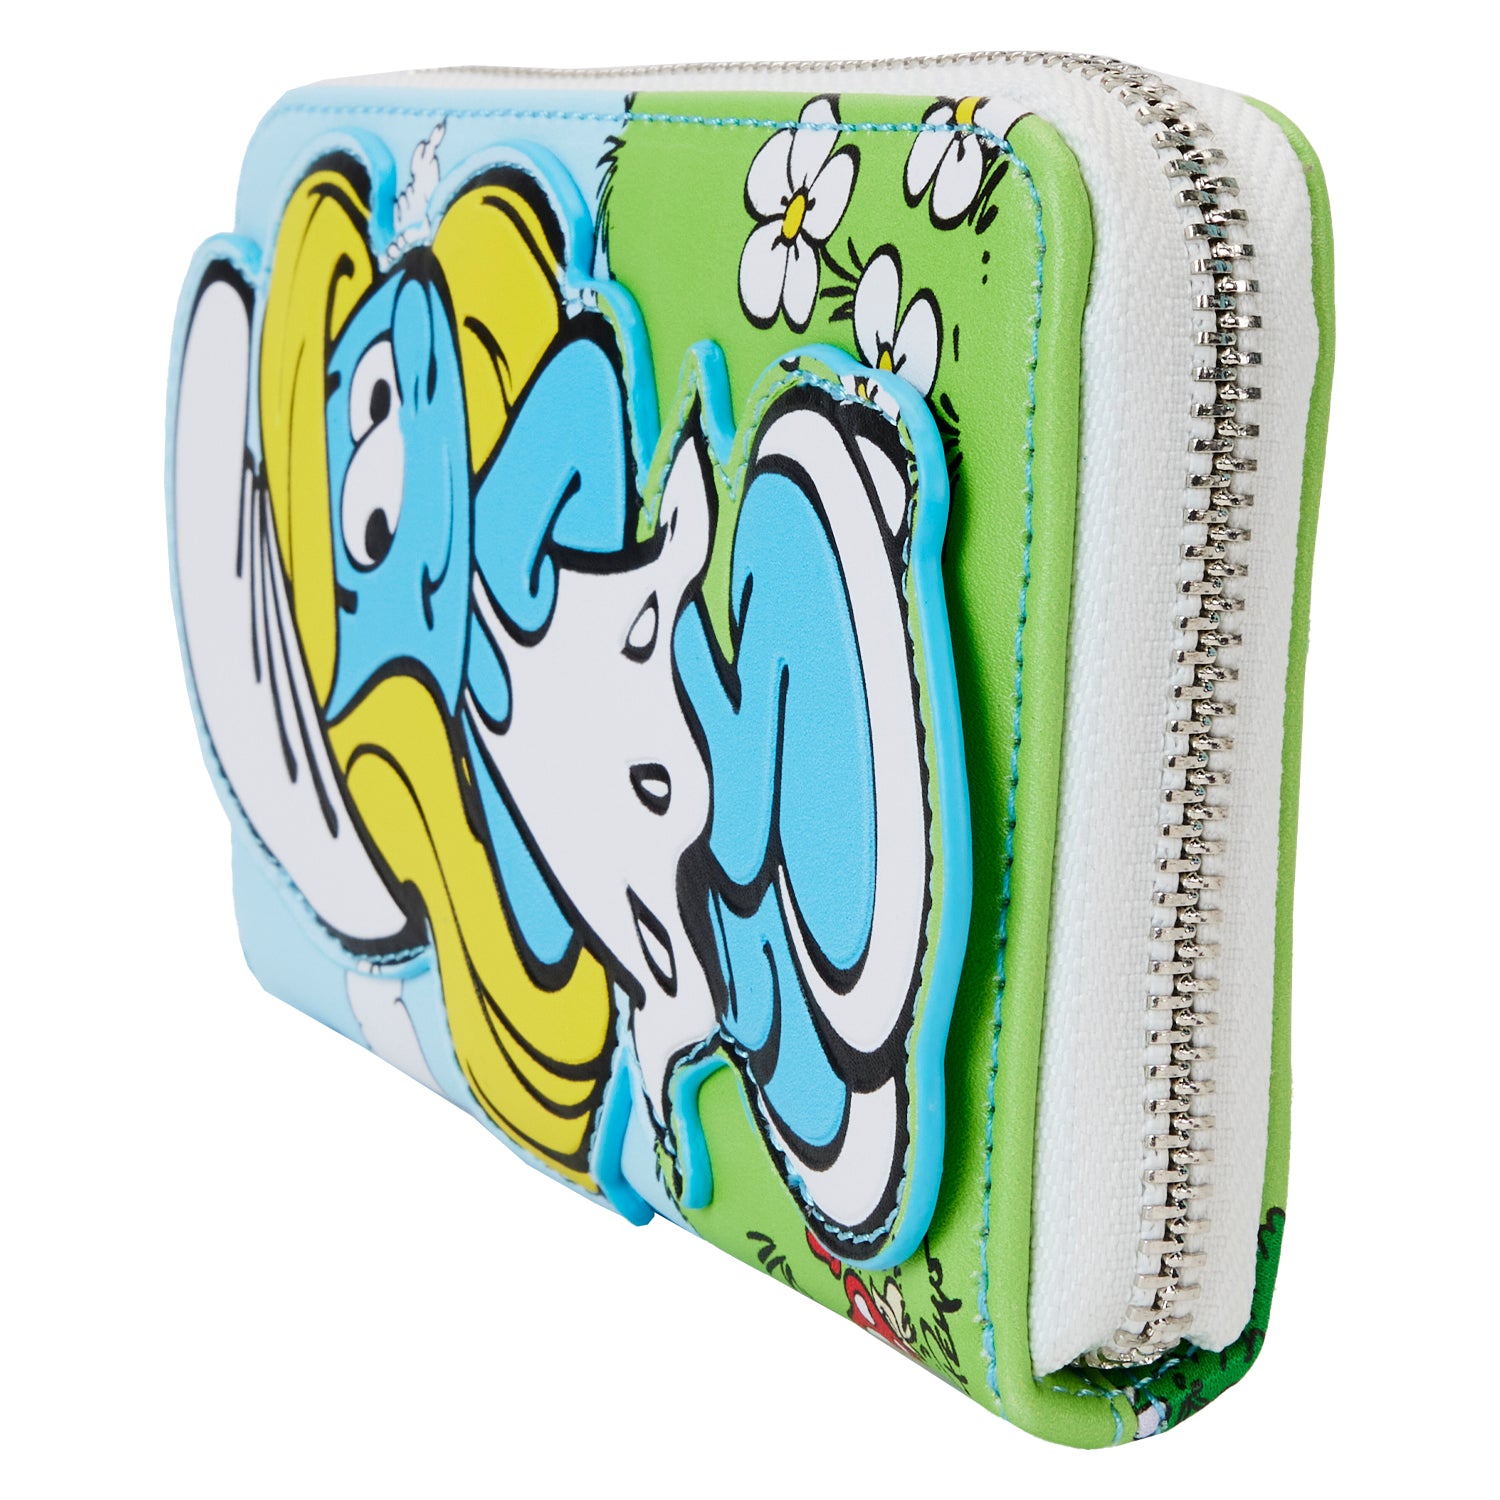 The Smurfs | Smurfette Cosplay Zip Around Wallet